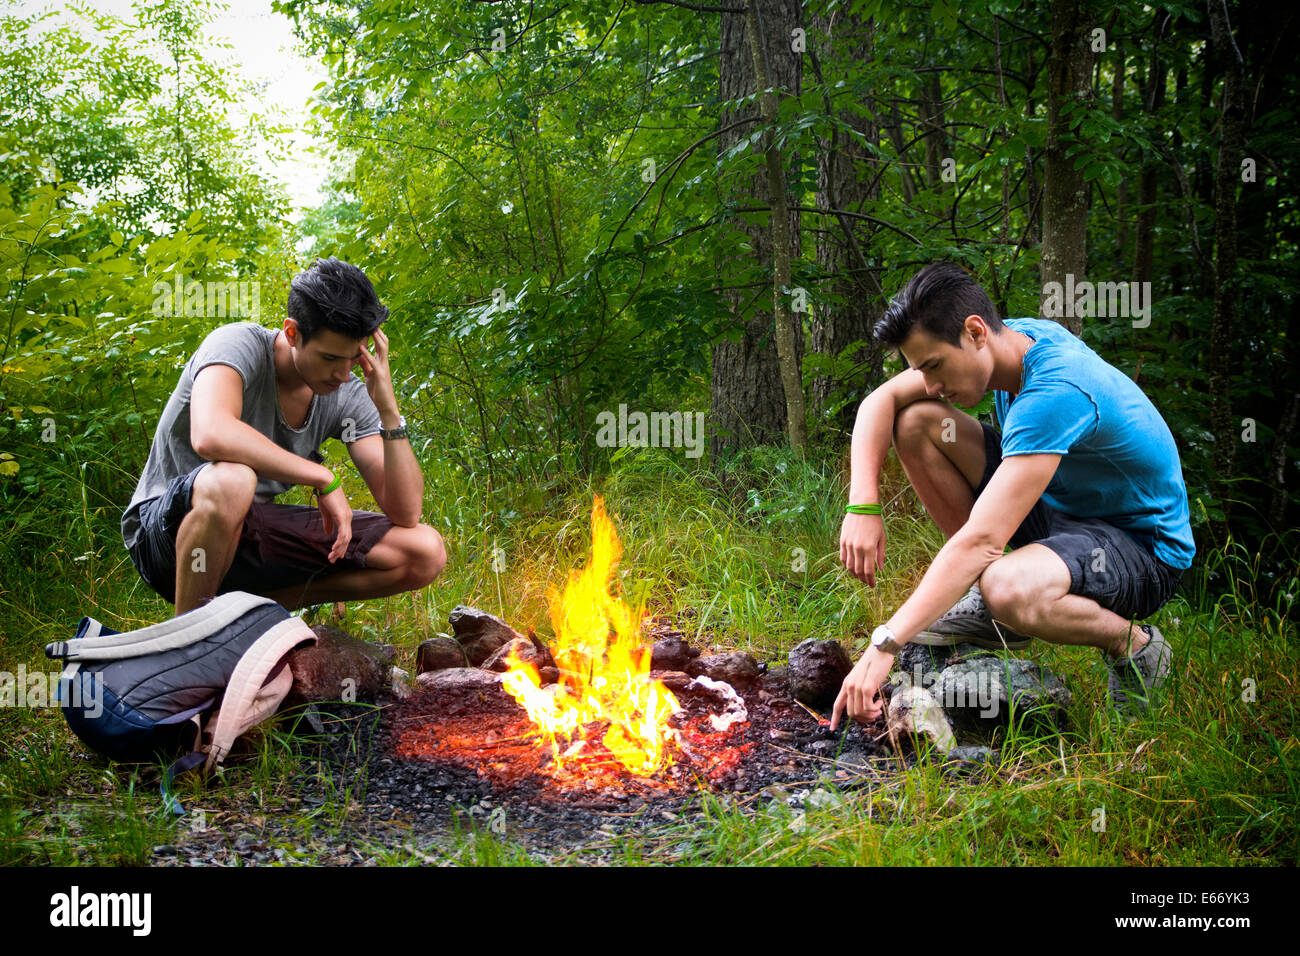 Zwei junge Männer, die camping in den Bergen hocken neben einem brennenden Lagerfeuer mit Rucksack starrte nachdenklich auf das Feuer Stockfoto